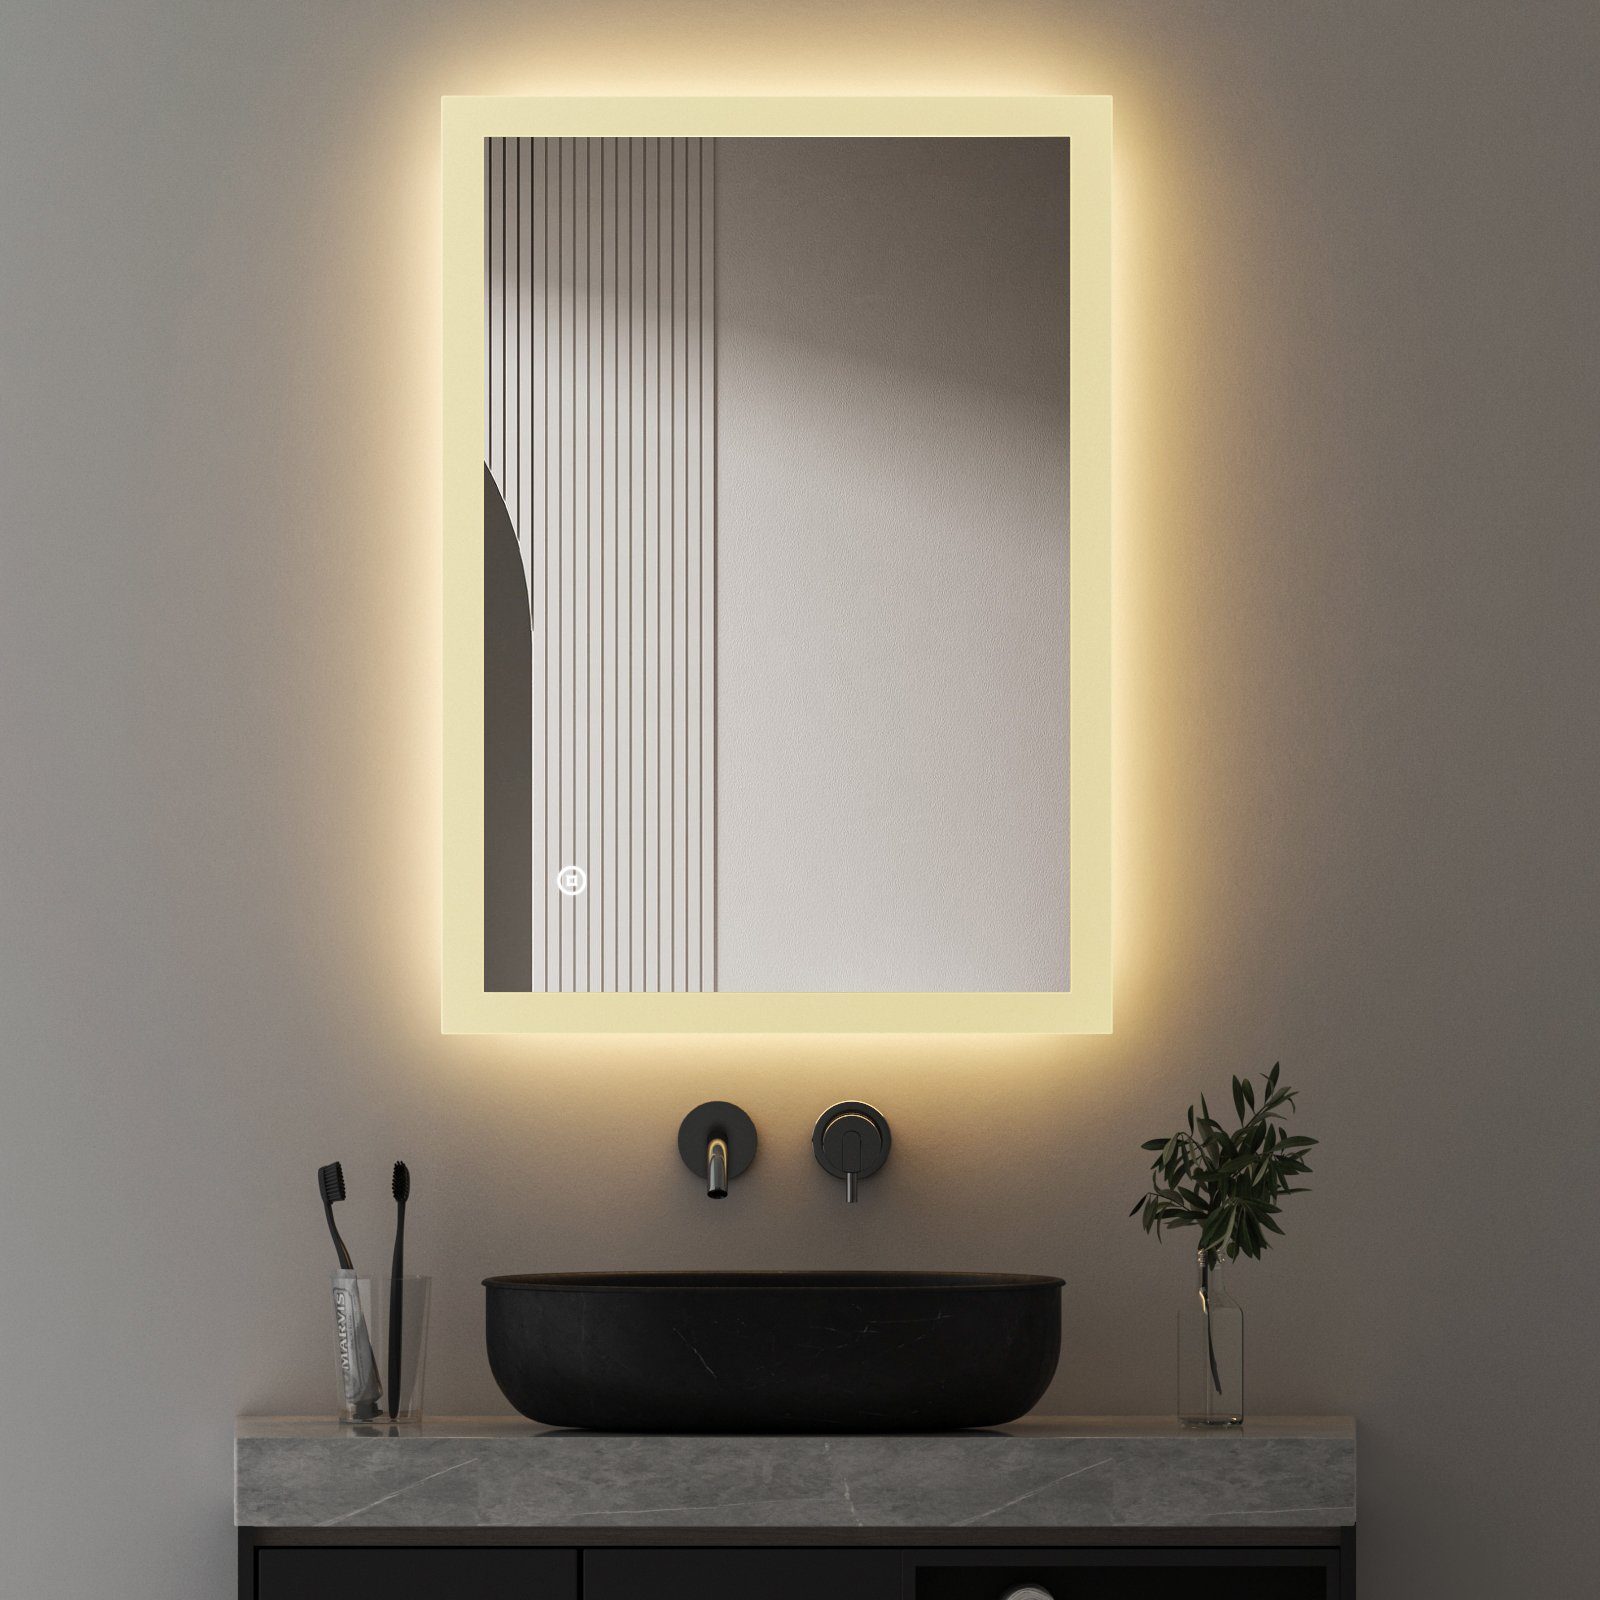 WDWRITTI Spiegel Bad mit Warmweiß beleuchtung Badspiegel Led Touch Uhr  Wandschalter (Badezimmerspiegel Rund Rechteckig, 3 Lichtfarben, Helligkeit  einstellbar), Speicherfunktion, IP44